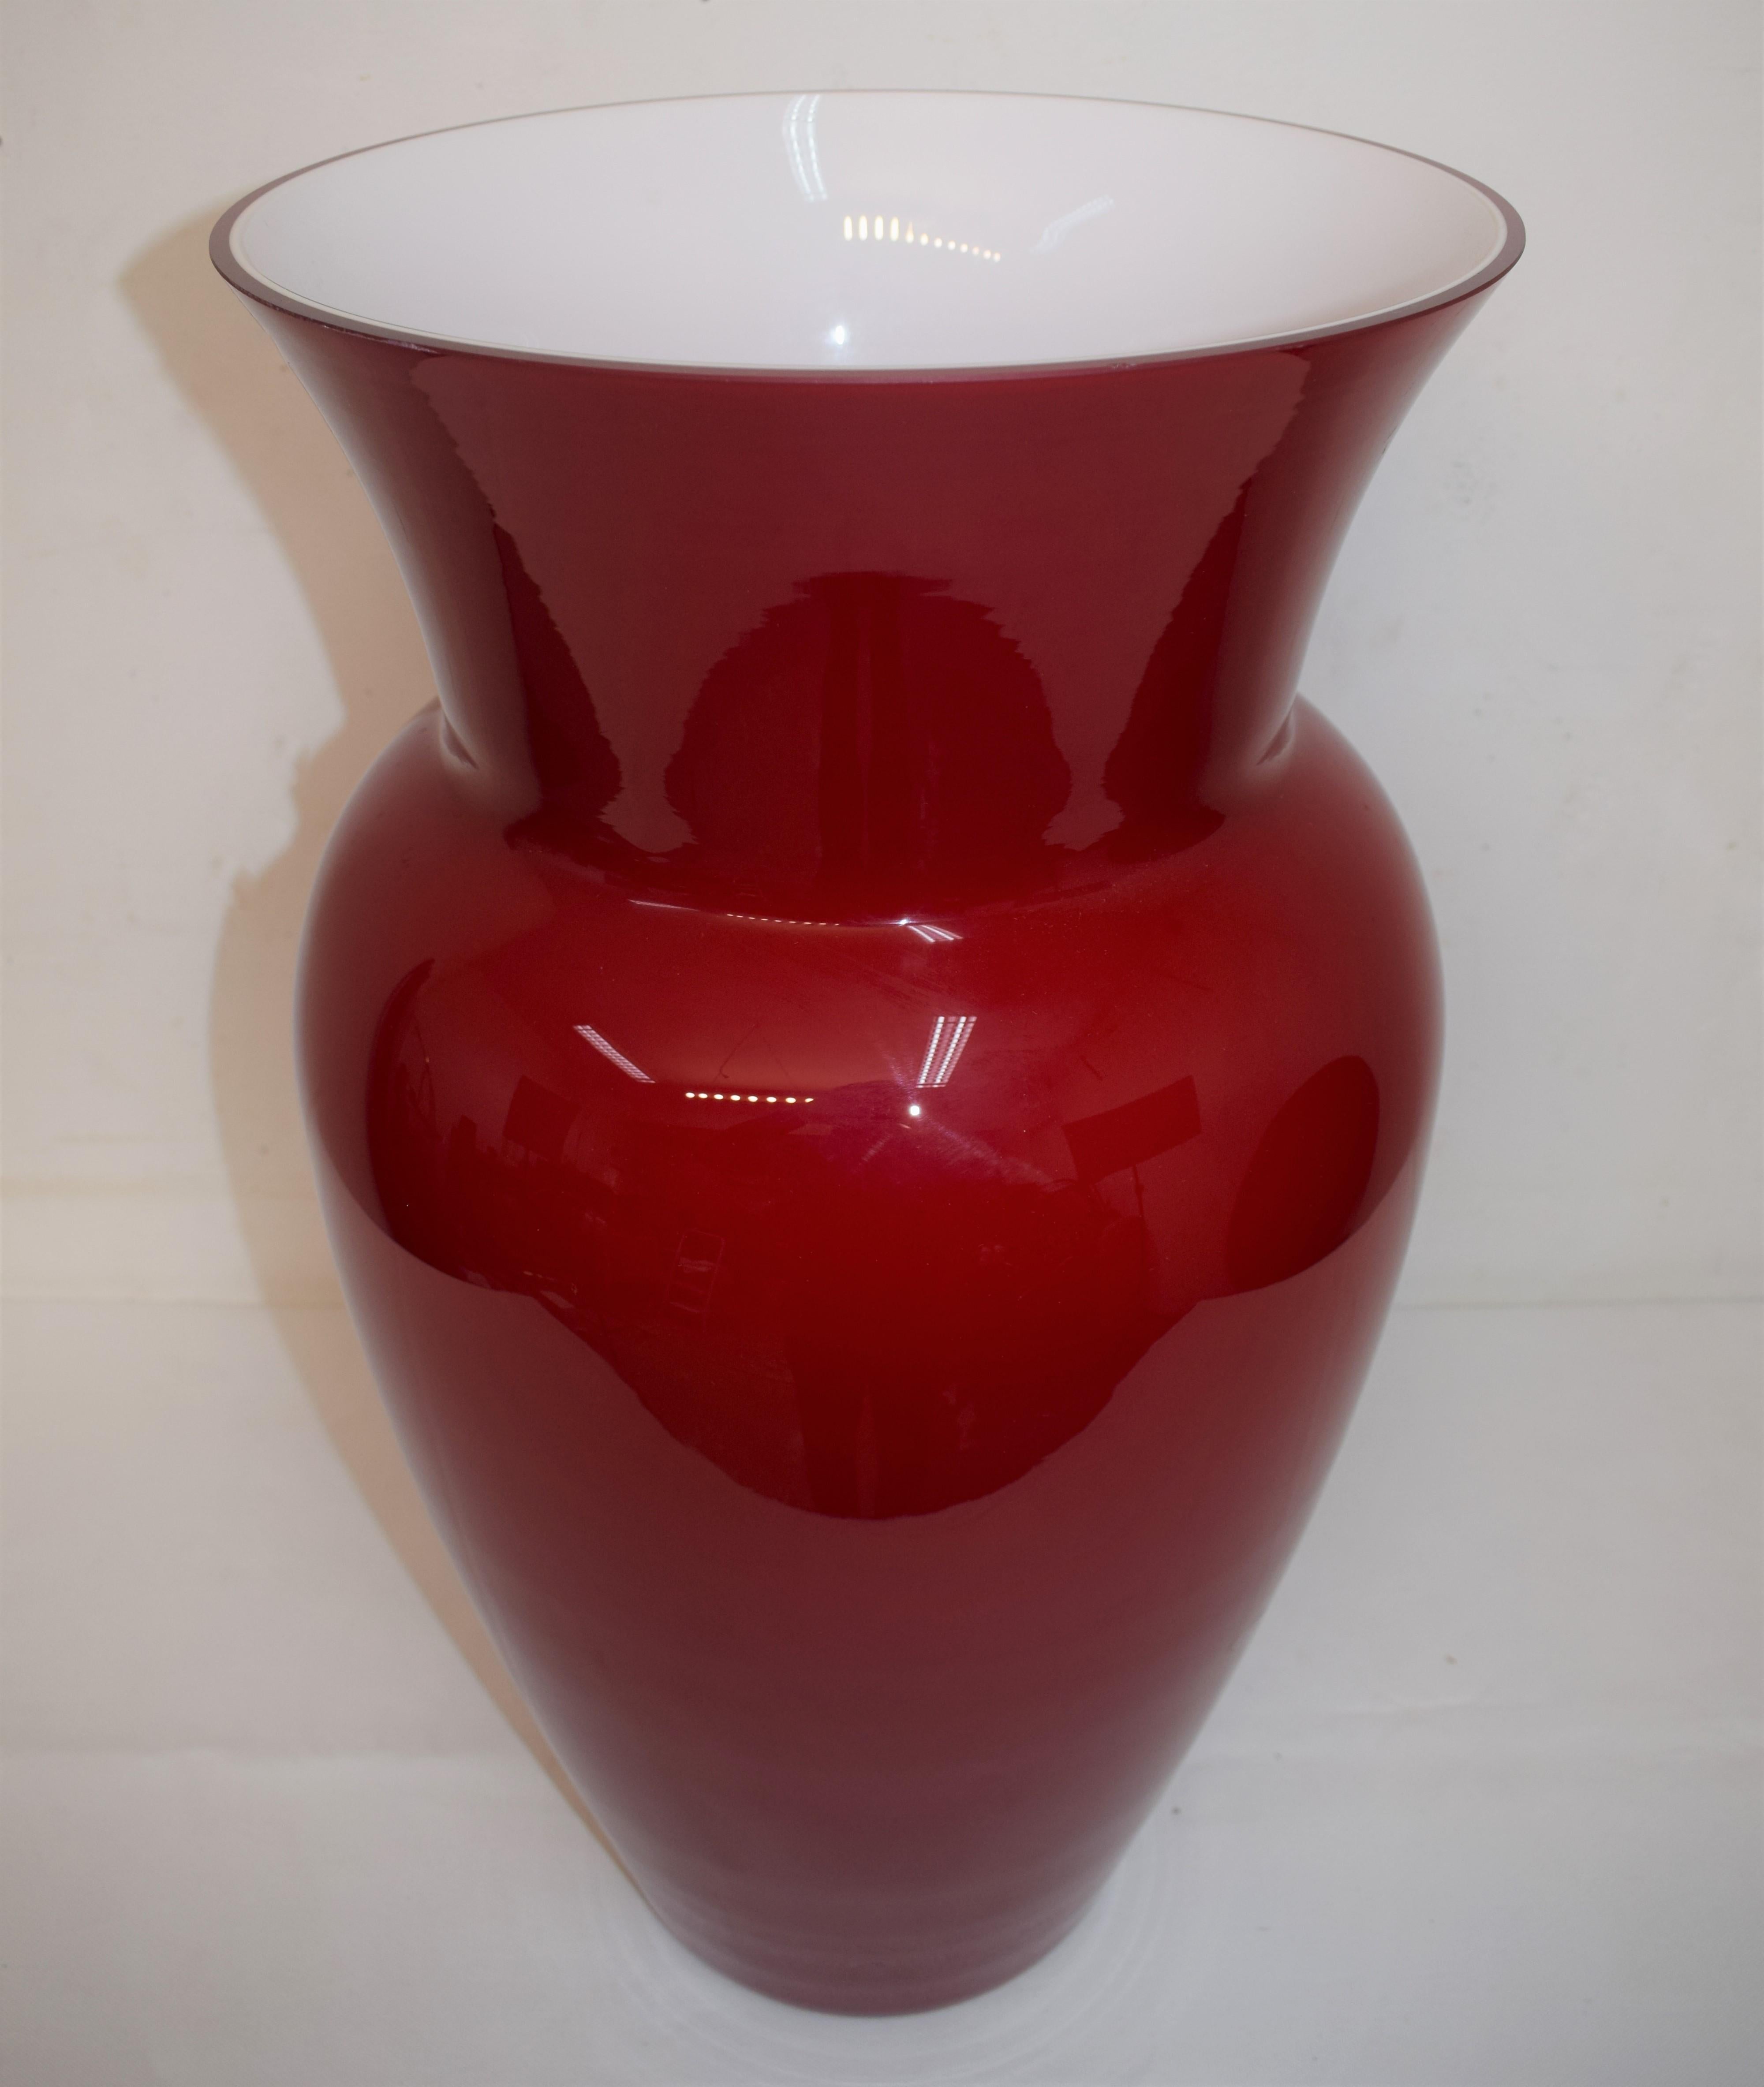 Murano glass vase by Carlo Nason, 1990s.
Dimensions: H=59 cm; D=32 cm.